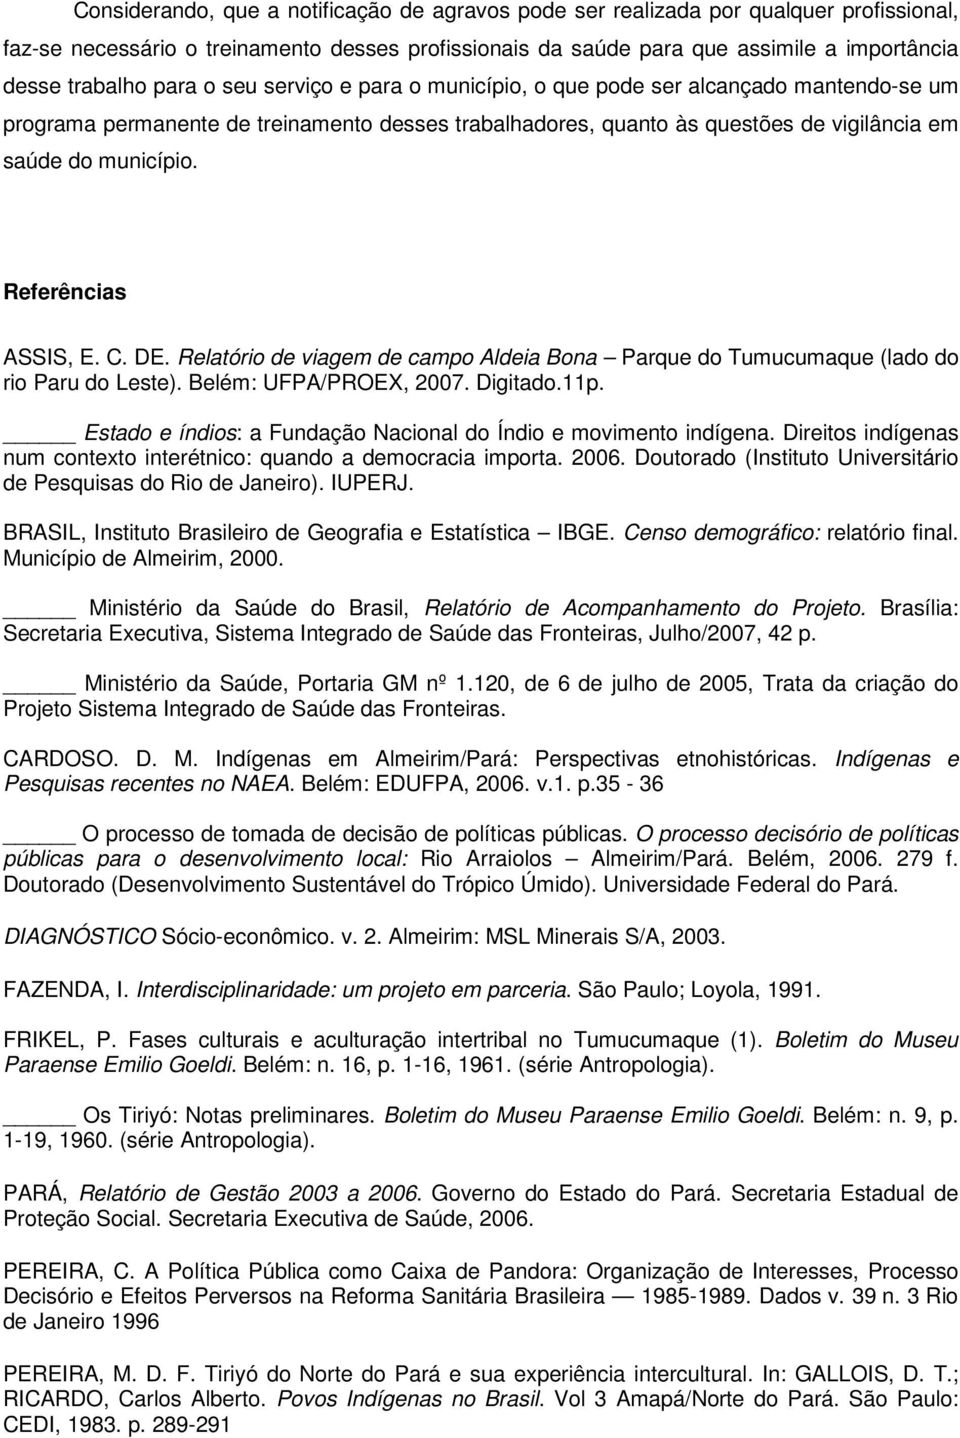 Referências ASSIS, E. C. DE. Relatório de viagem de campo Aldeia Bona Parque do Tumucumaque (lado do rio Paru do Leste). Belém: UFPA/PROEX, 2007. Digitado.11p.